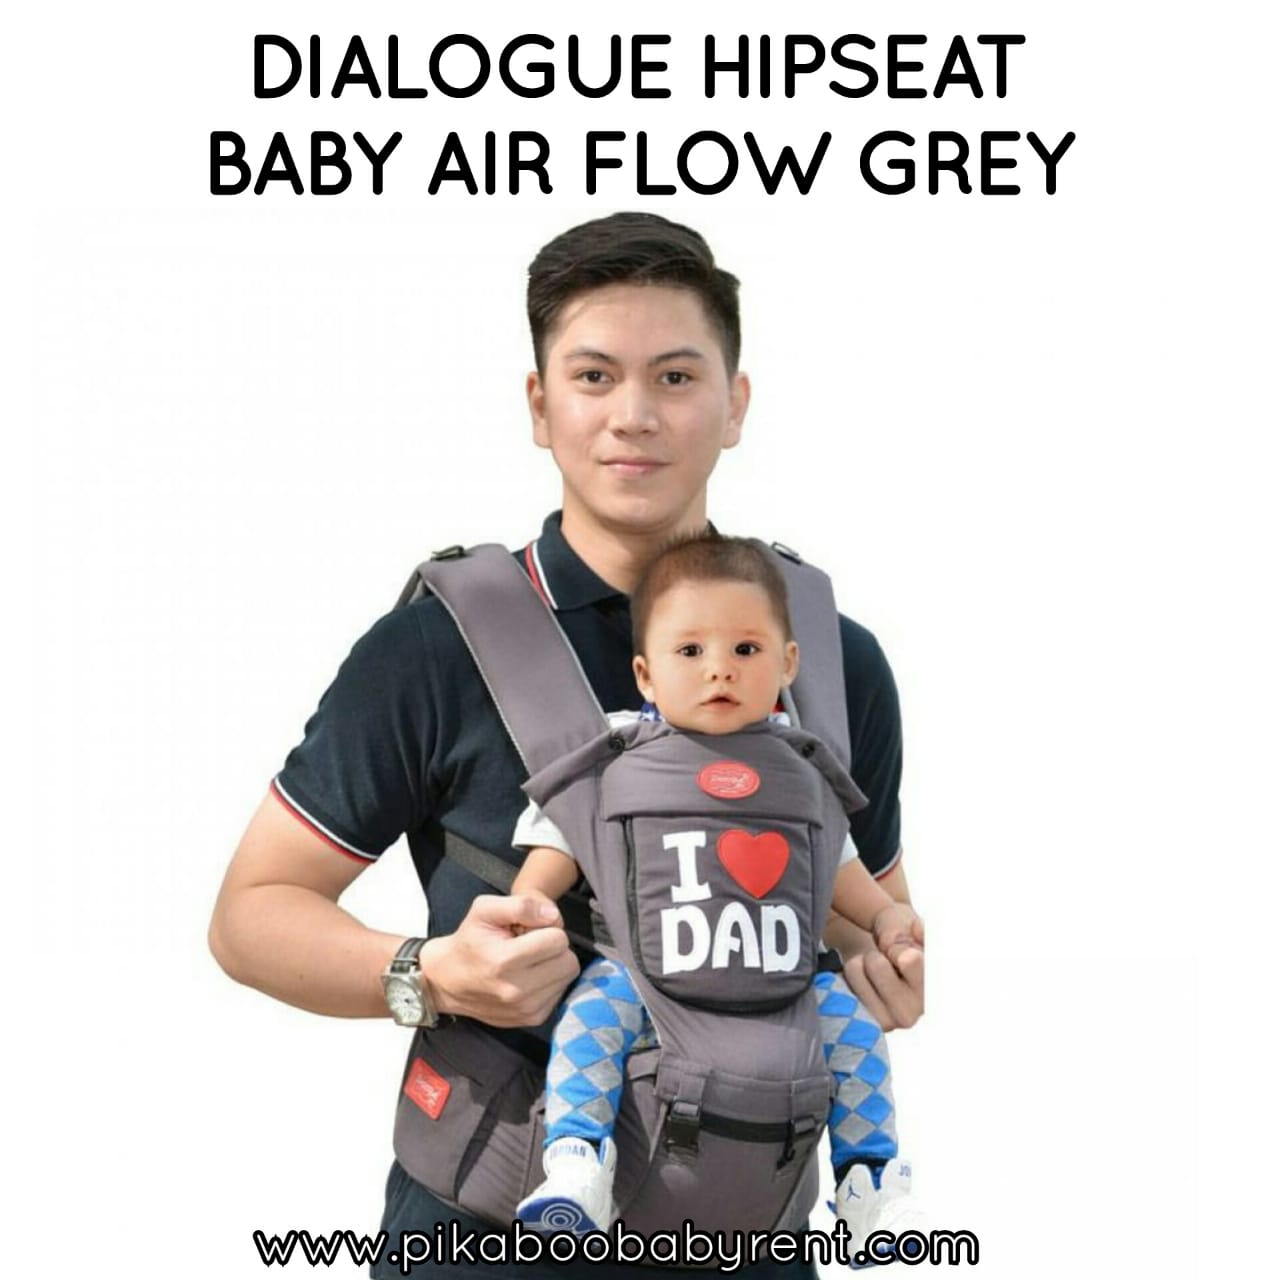 DIALOGUE HIPSEAT BABY AIR FLOW